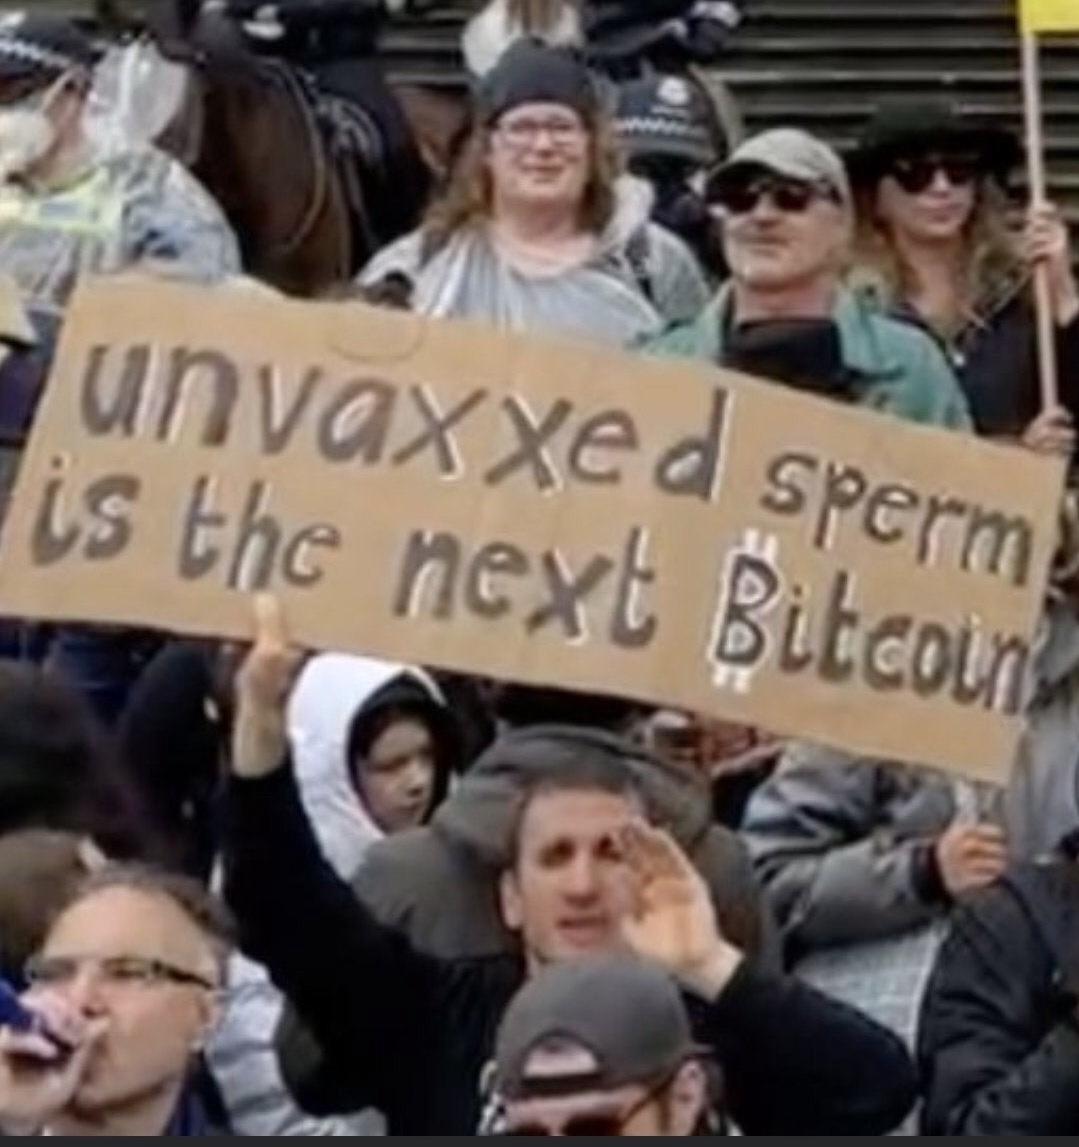 Unvaxxed Sperm Bitcoin